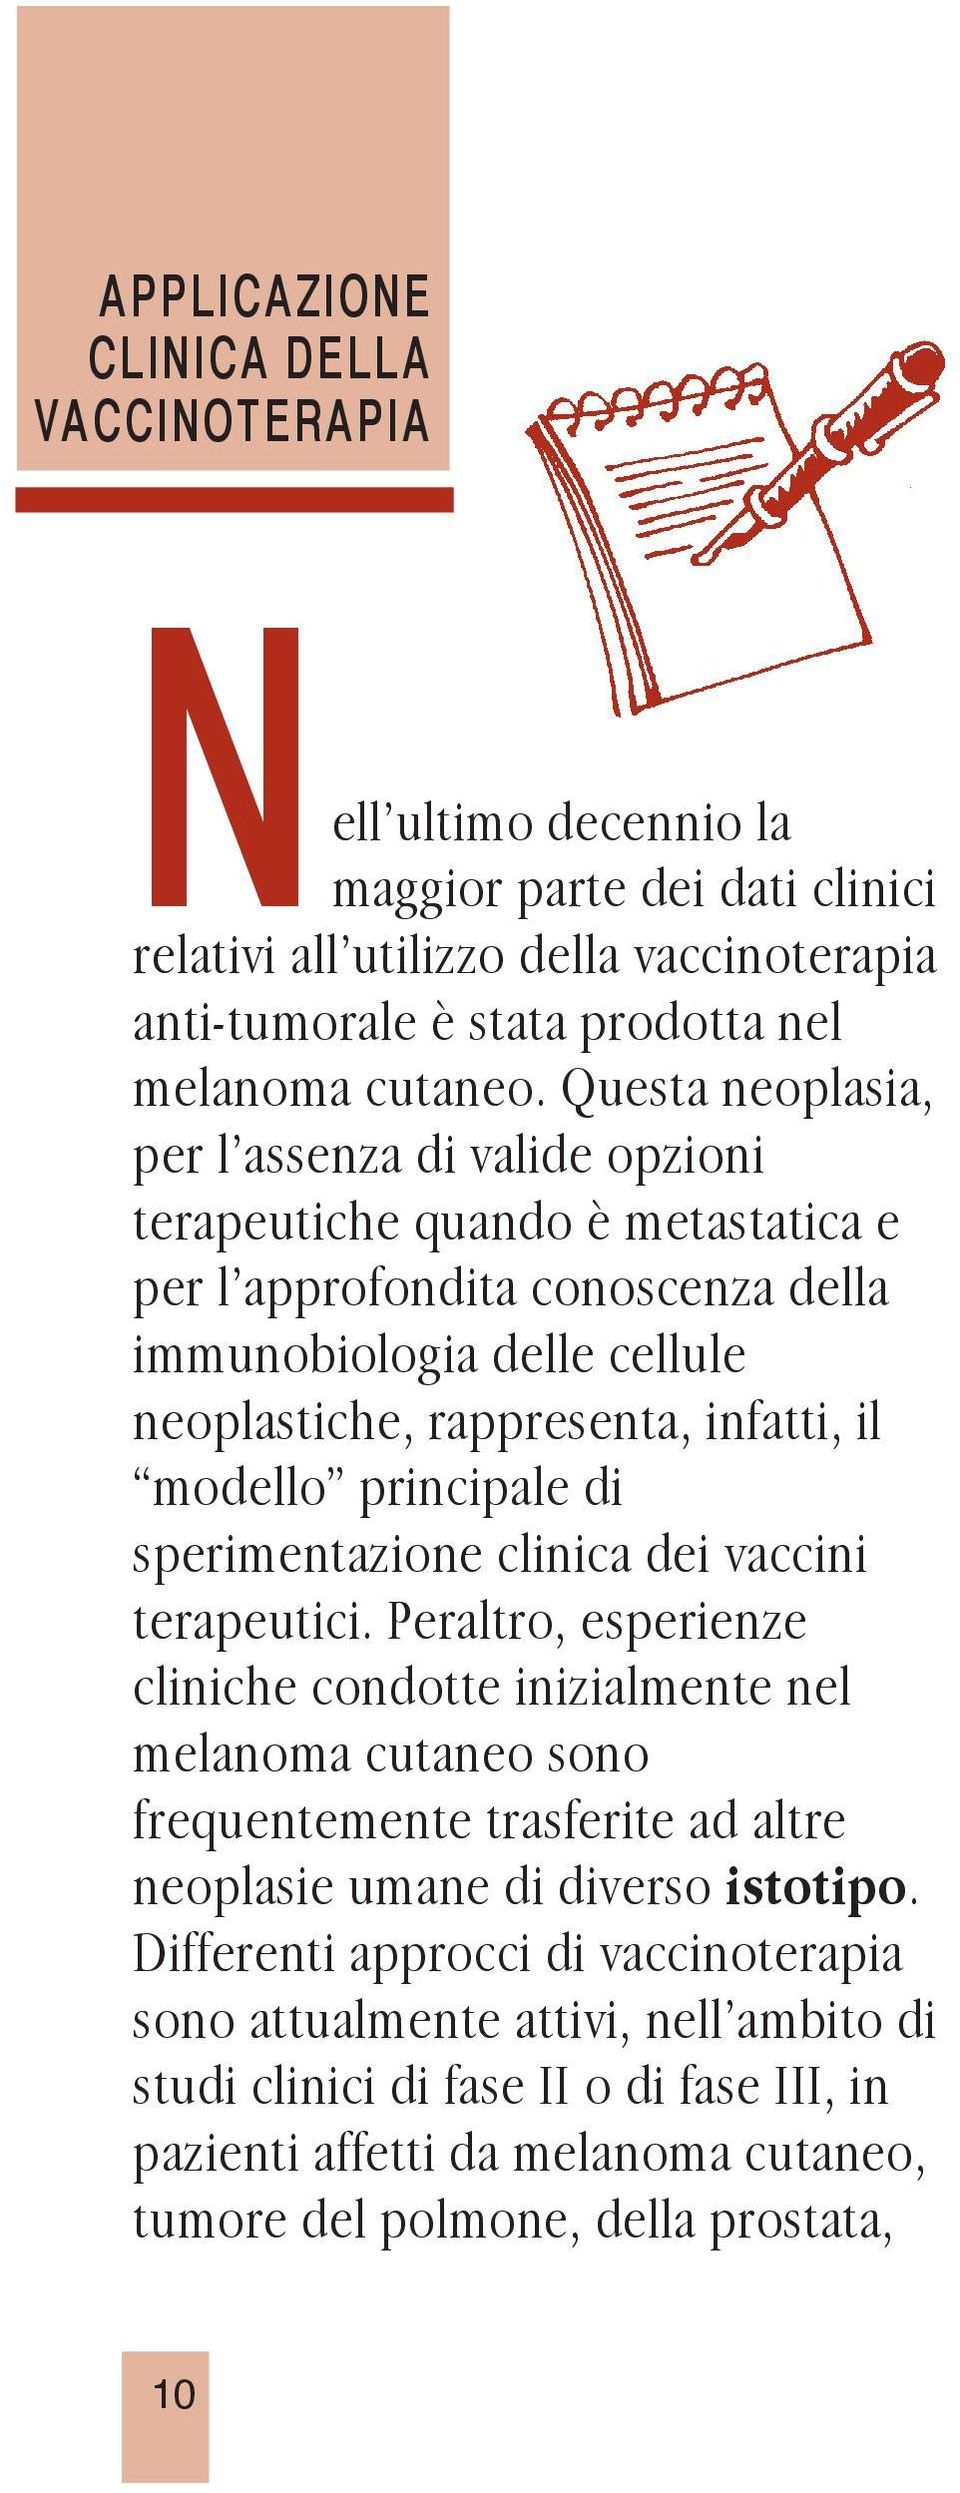 principale di sperimentazione clinica dei vaccini terapeutici.